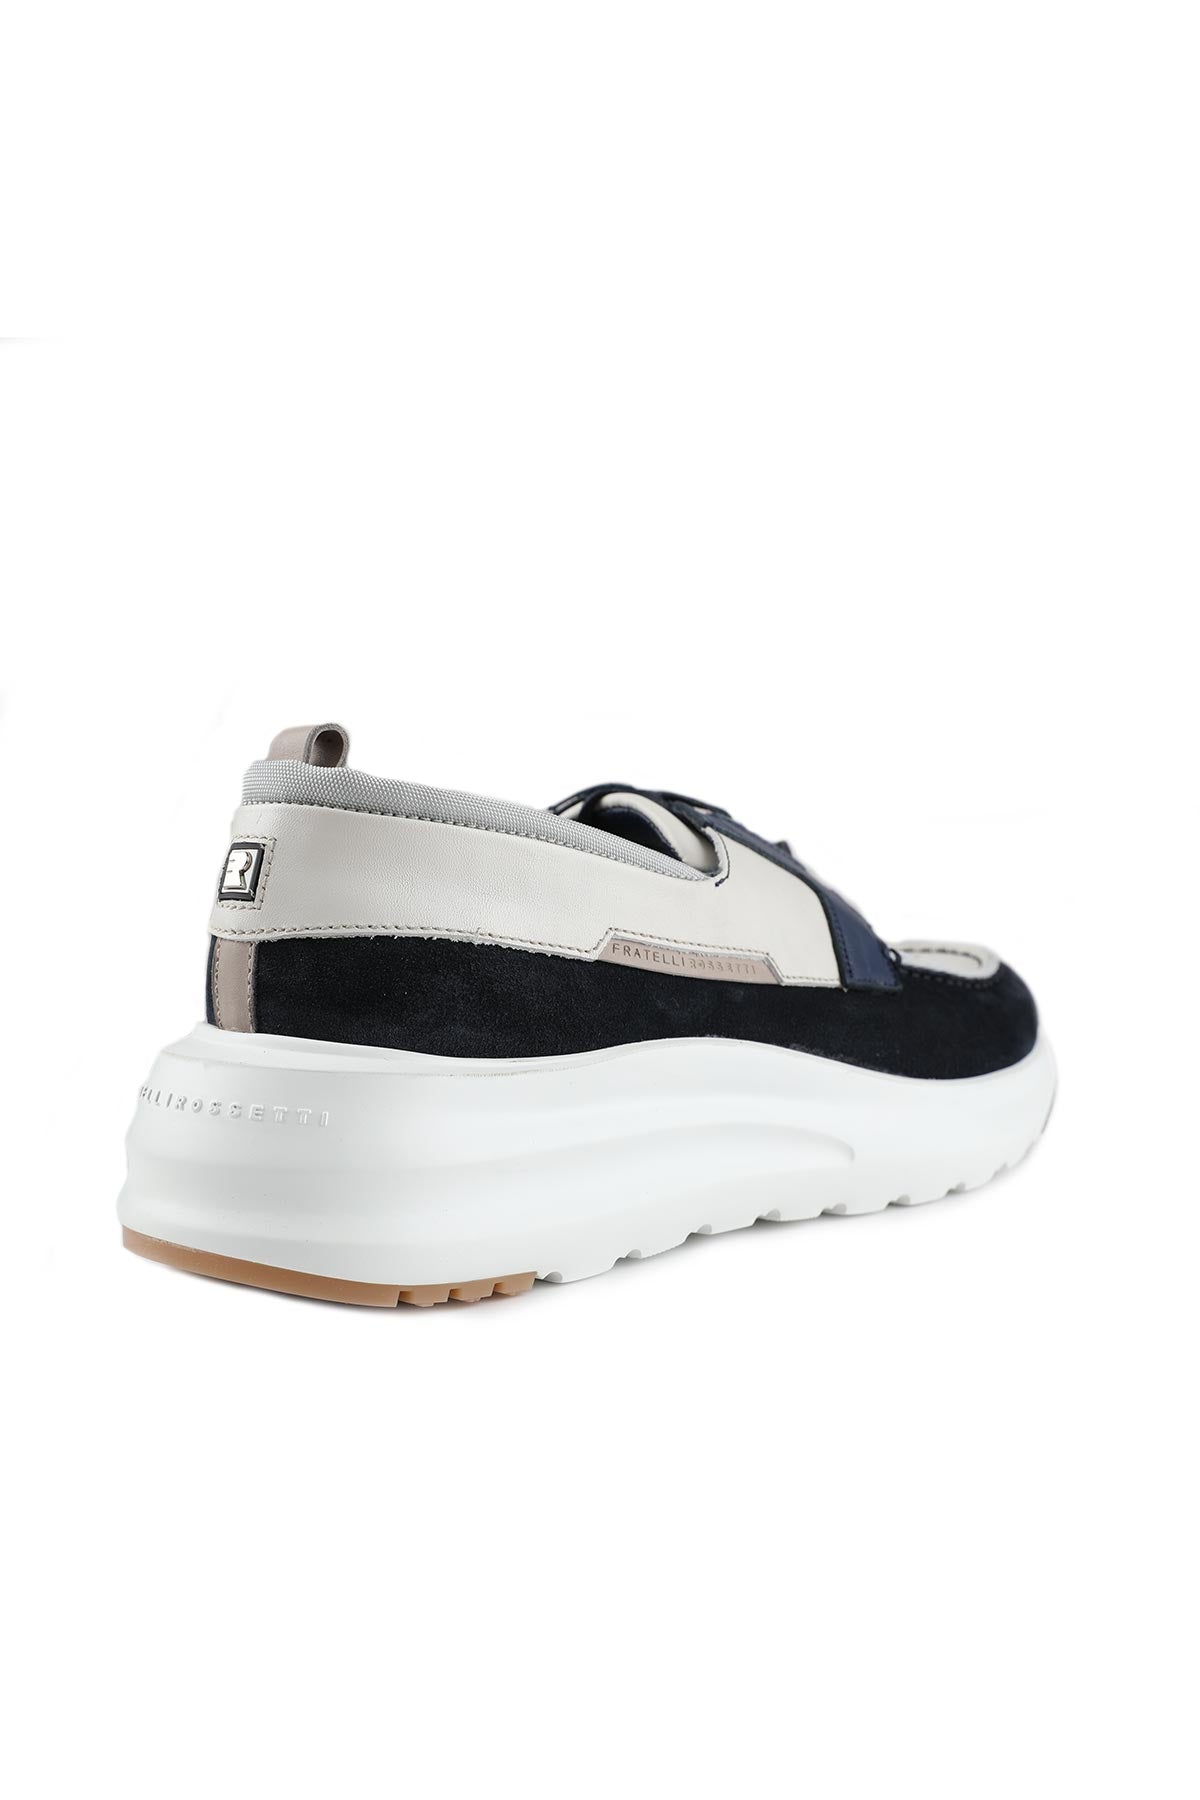 Fratelli Rossetti Sneaker Ayakkabı-Libas Trendy Fashion Store